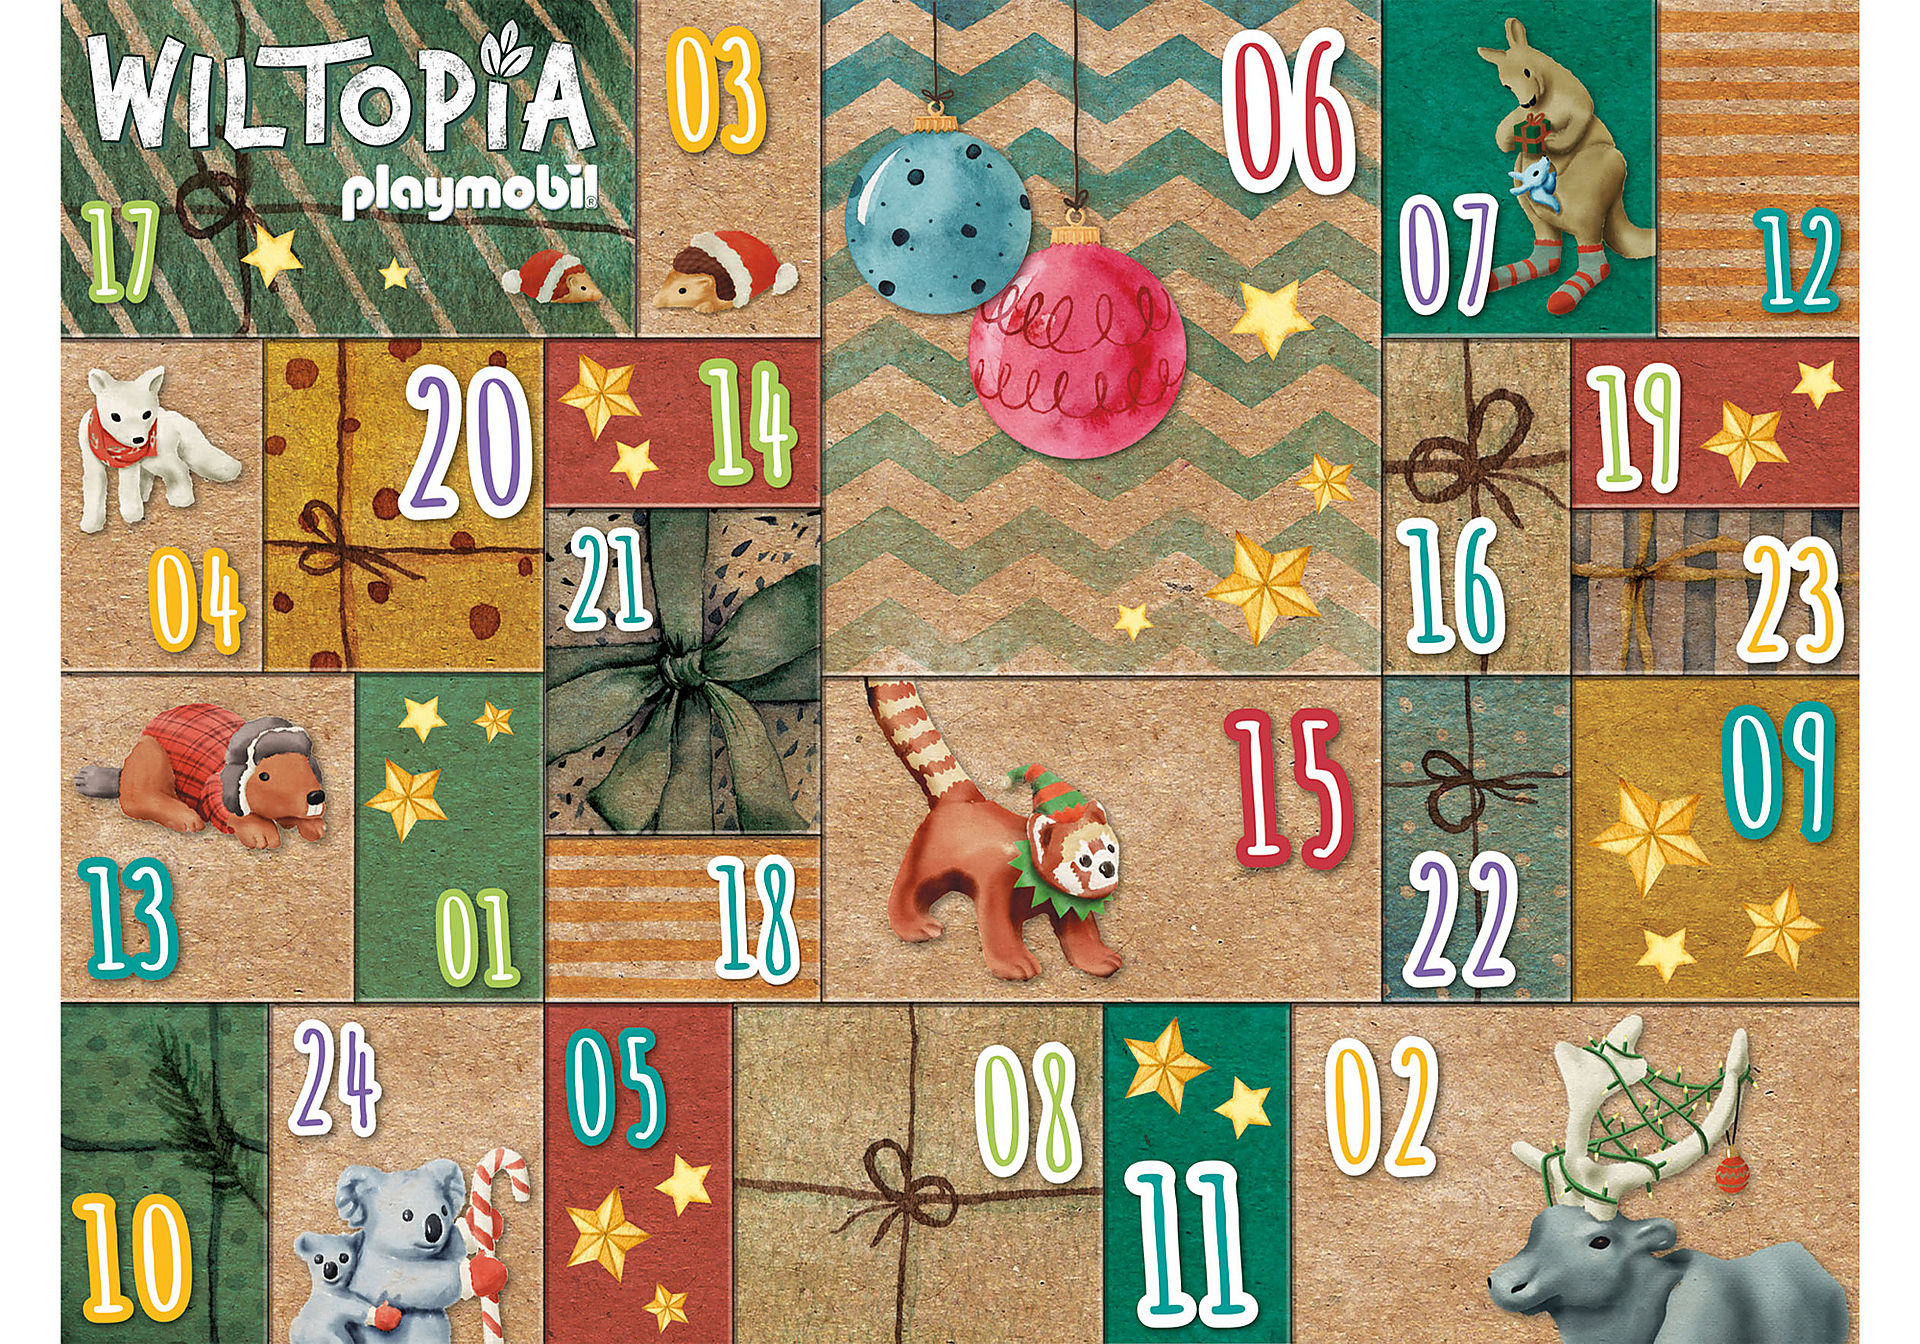 71006 Wiltopia - Calendario dell'Avvento Fai da te - Viaggio degli animali intorno al mondo zoom image4